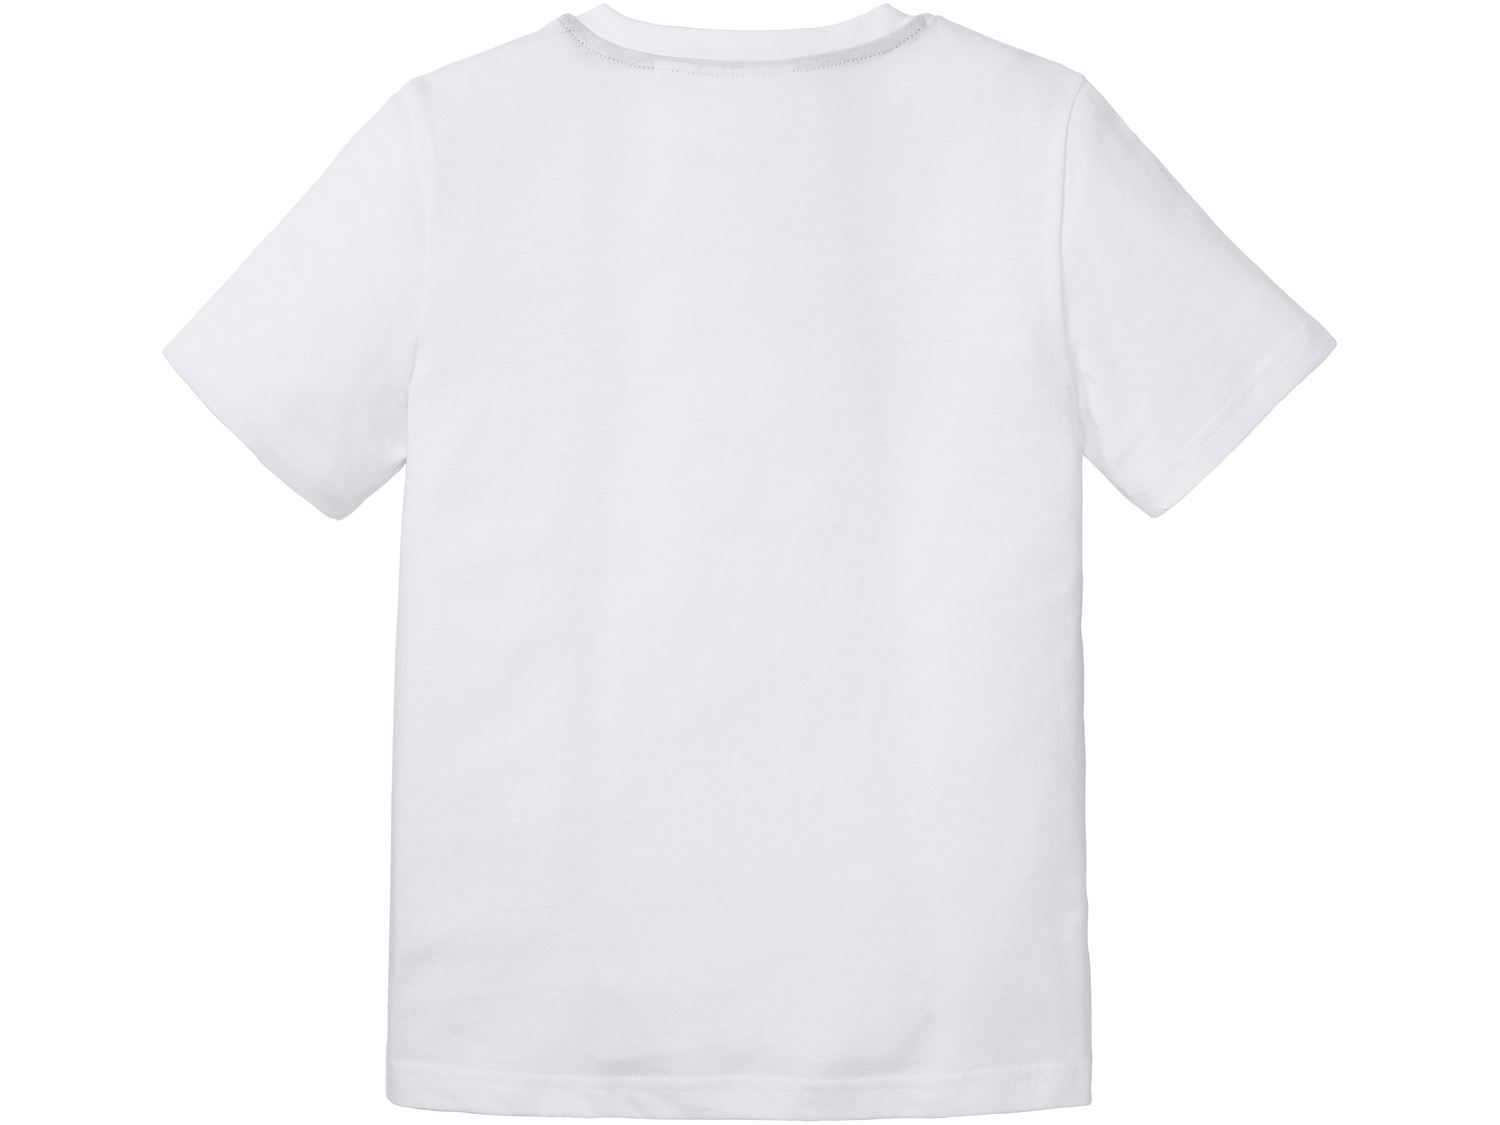 T-shirt dziecięcy , cena 12,99 PLN 
- rozmiary: 98-140
- 100% bawełny
Dostępne ...